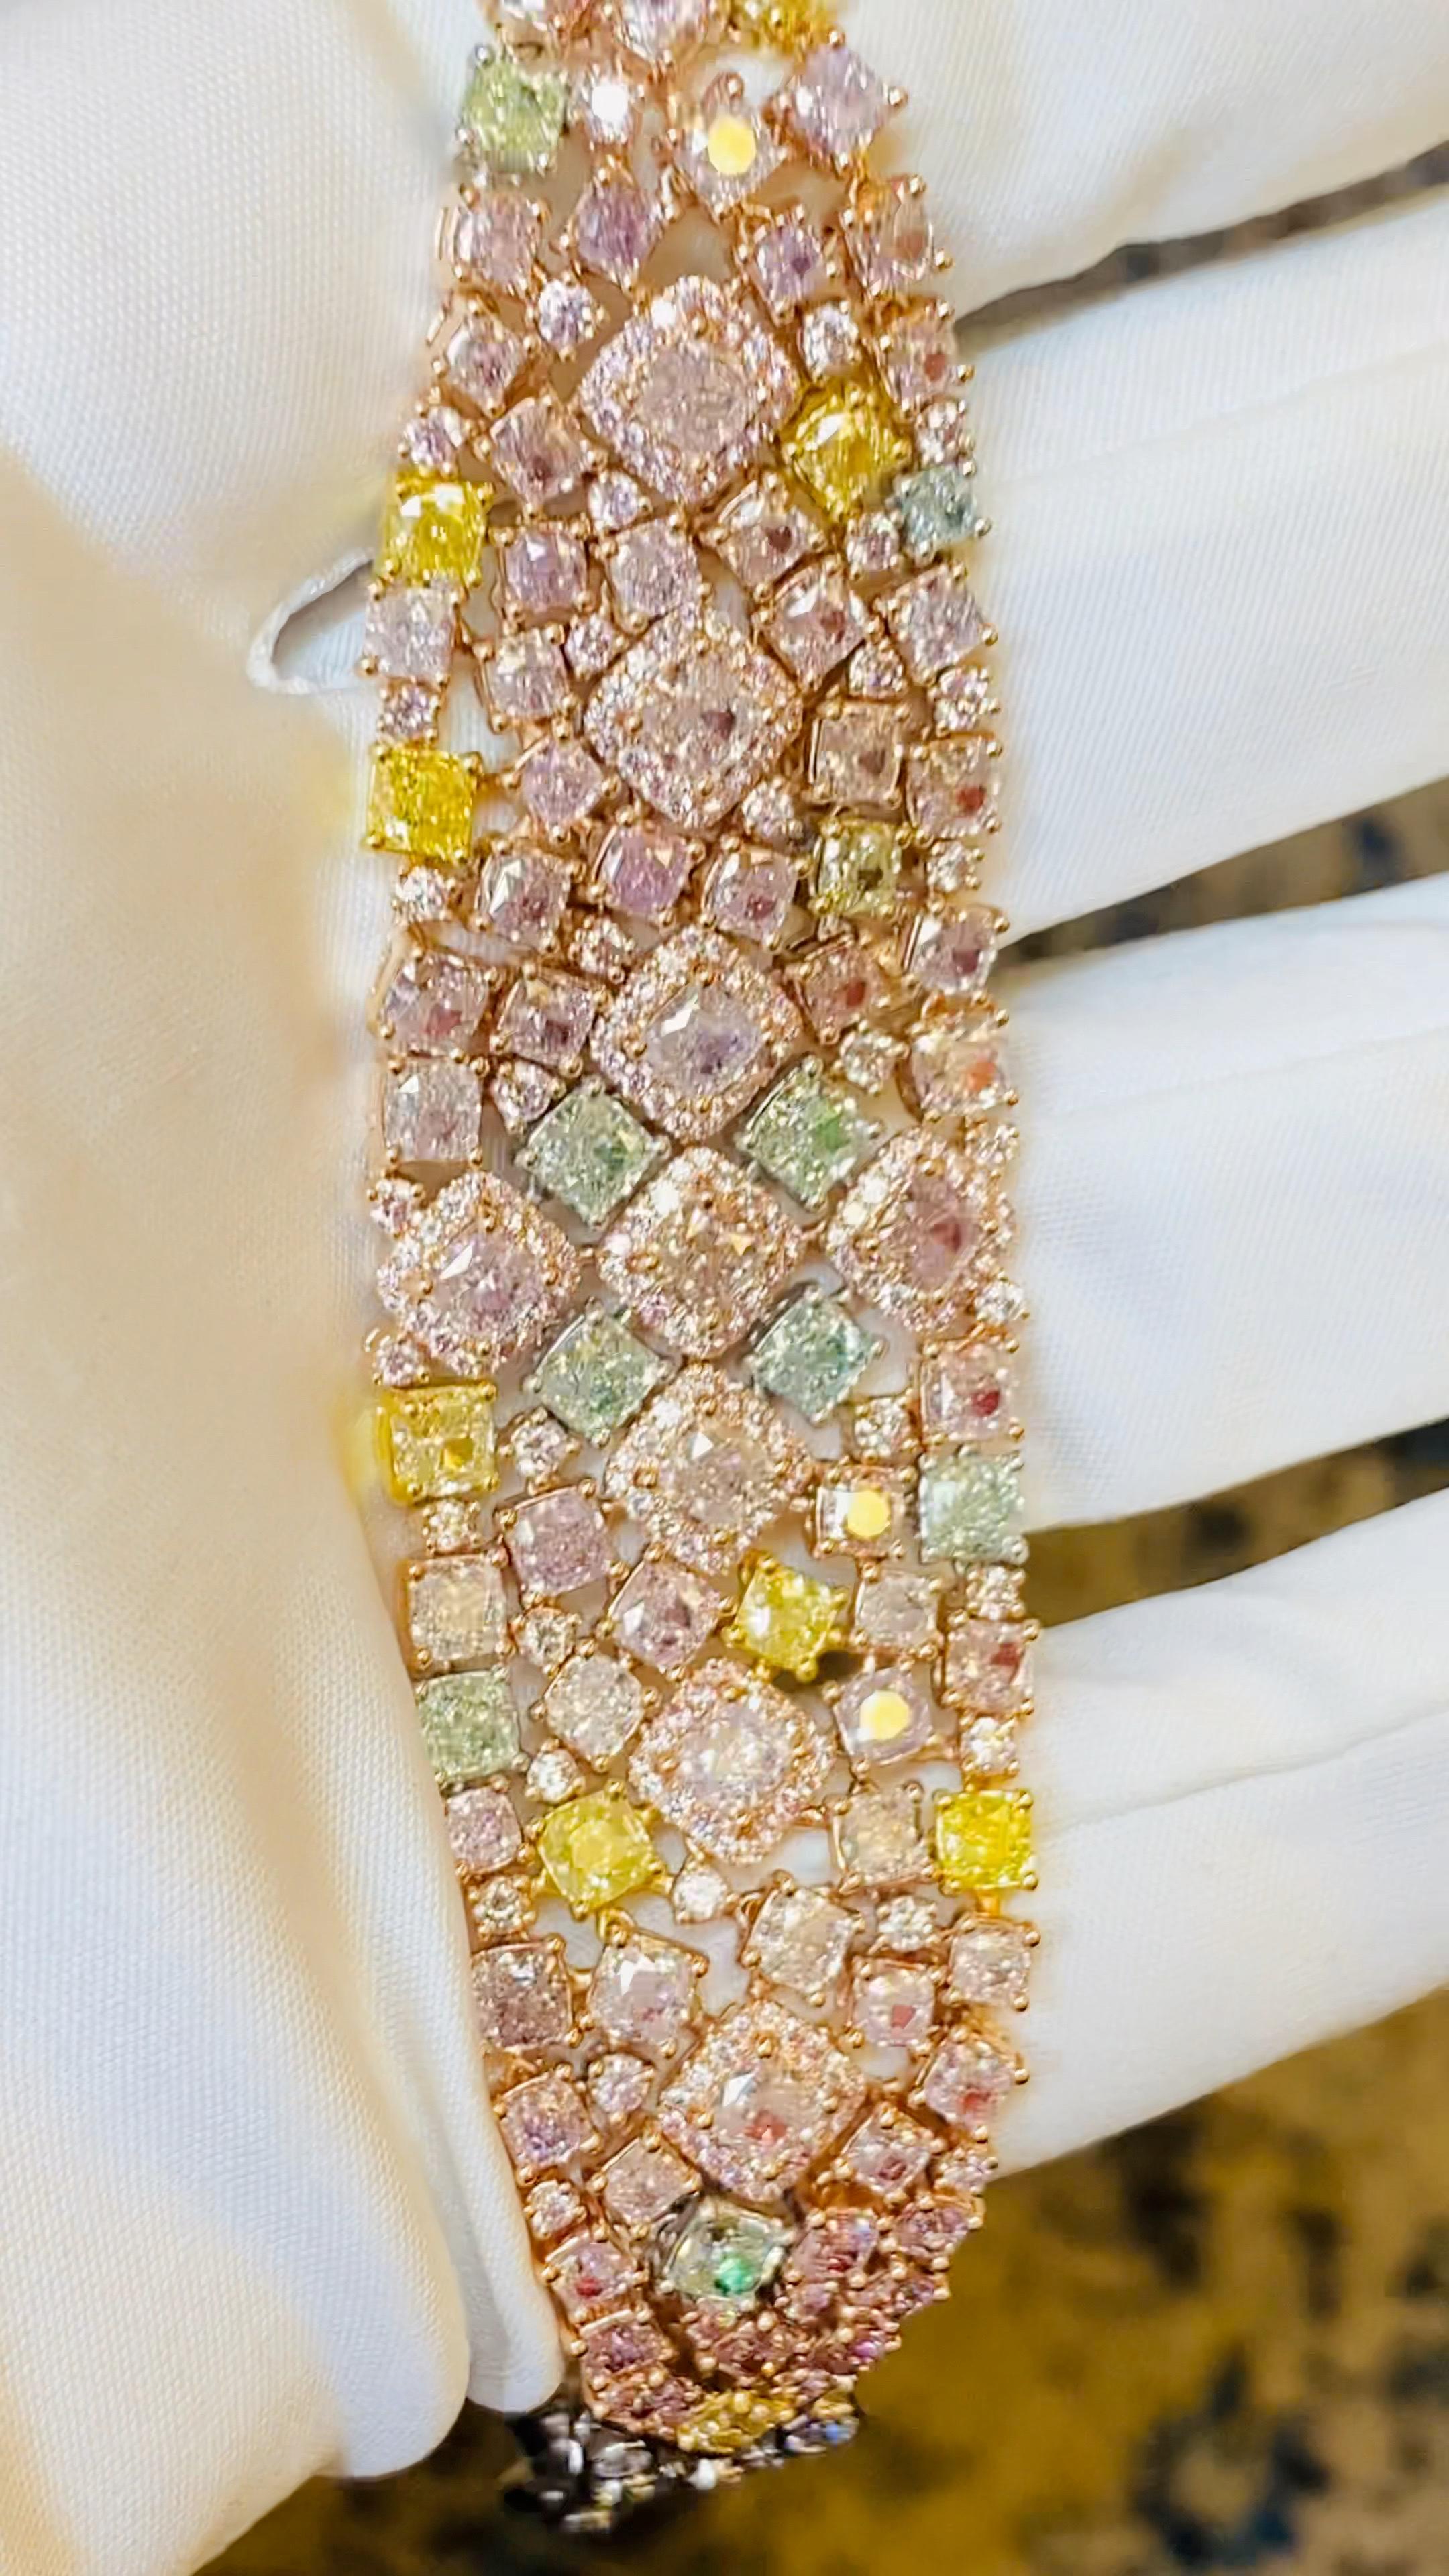 Ein weiteres handgefertigtes Meisterwerk aus dem Museumsgewölbe von Emilio Jewelry in der berühmten New Yorker Fifth Avenue. Für dieses Armband wurden über Jahre hinweg grüne, rosafarbene und gelbe Diamanten in natürlichen Fancy-Farben gesammelt,